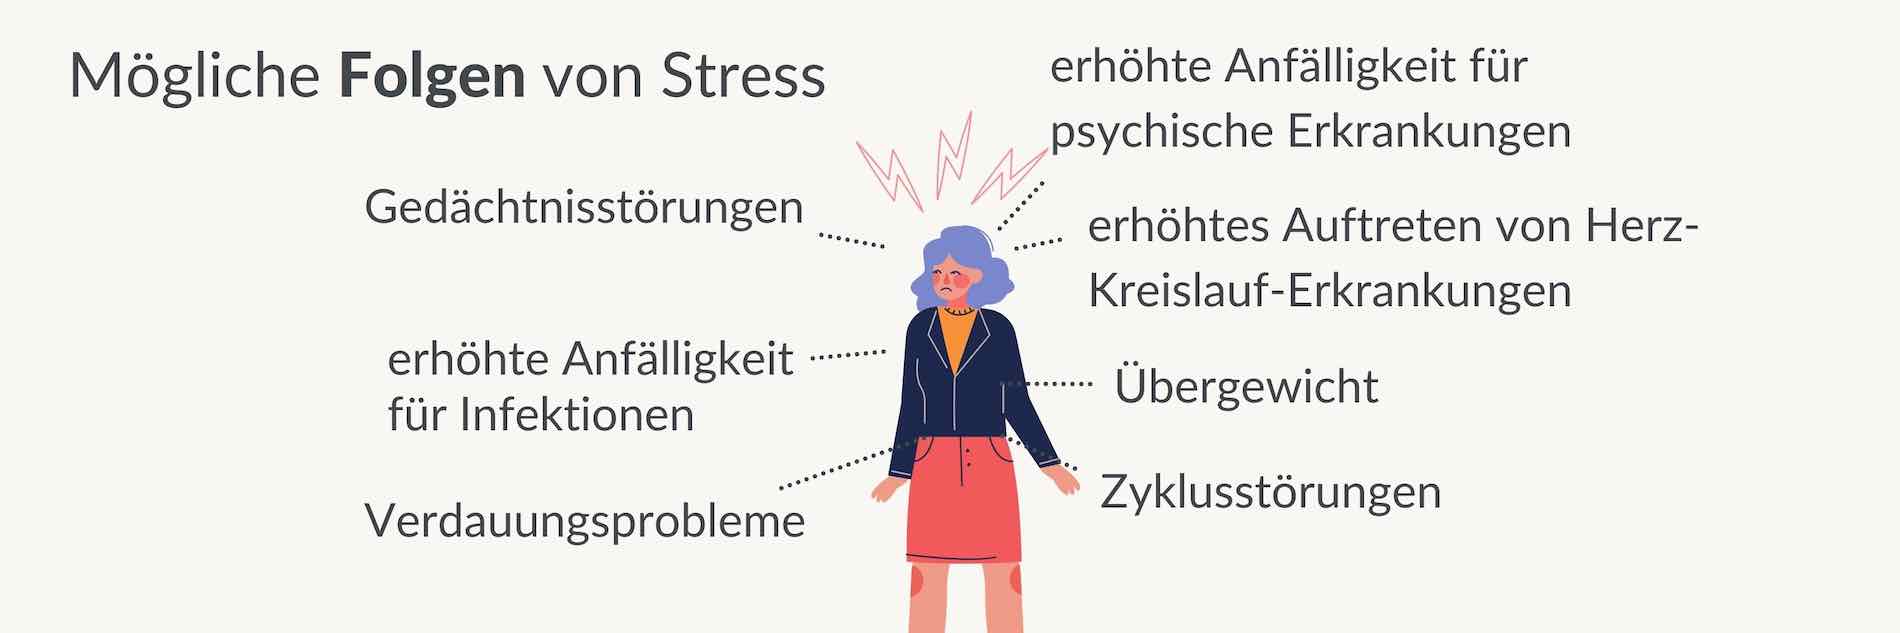 Mögliche Folgen von Stress